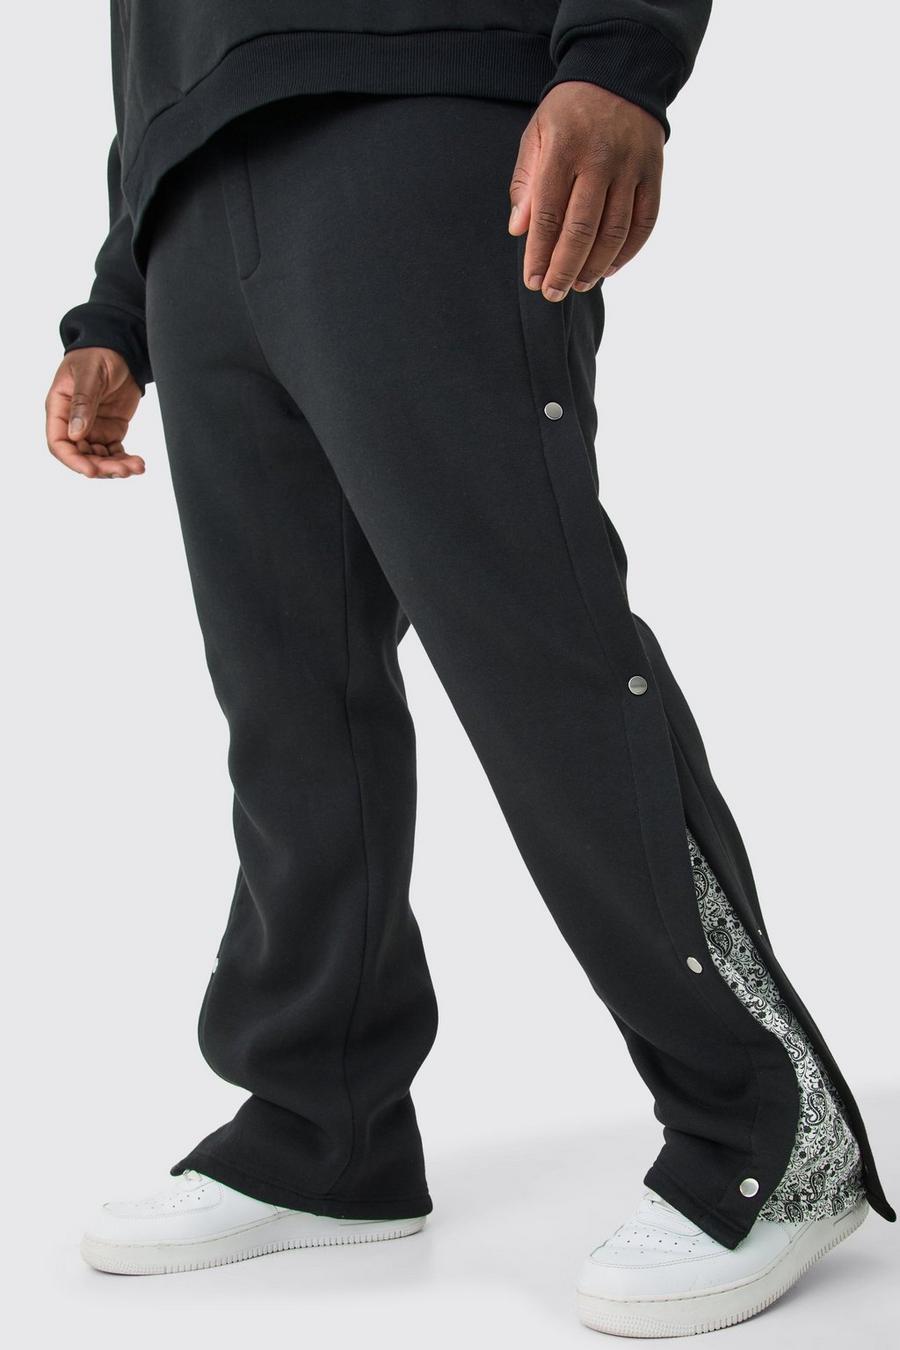 Pantaloni tuta Plus Size rilassati con stampa e pannelli laterali con bottoni a pressione, Black